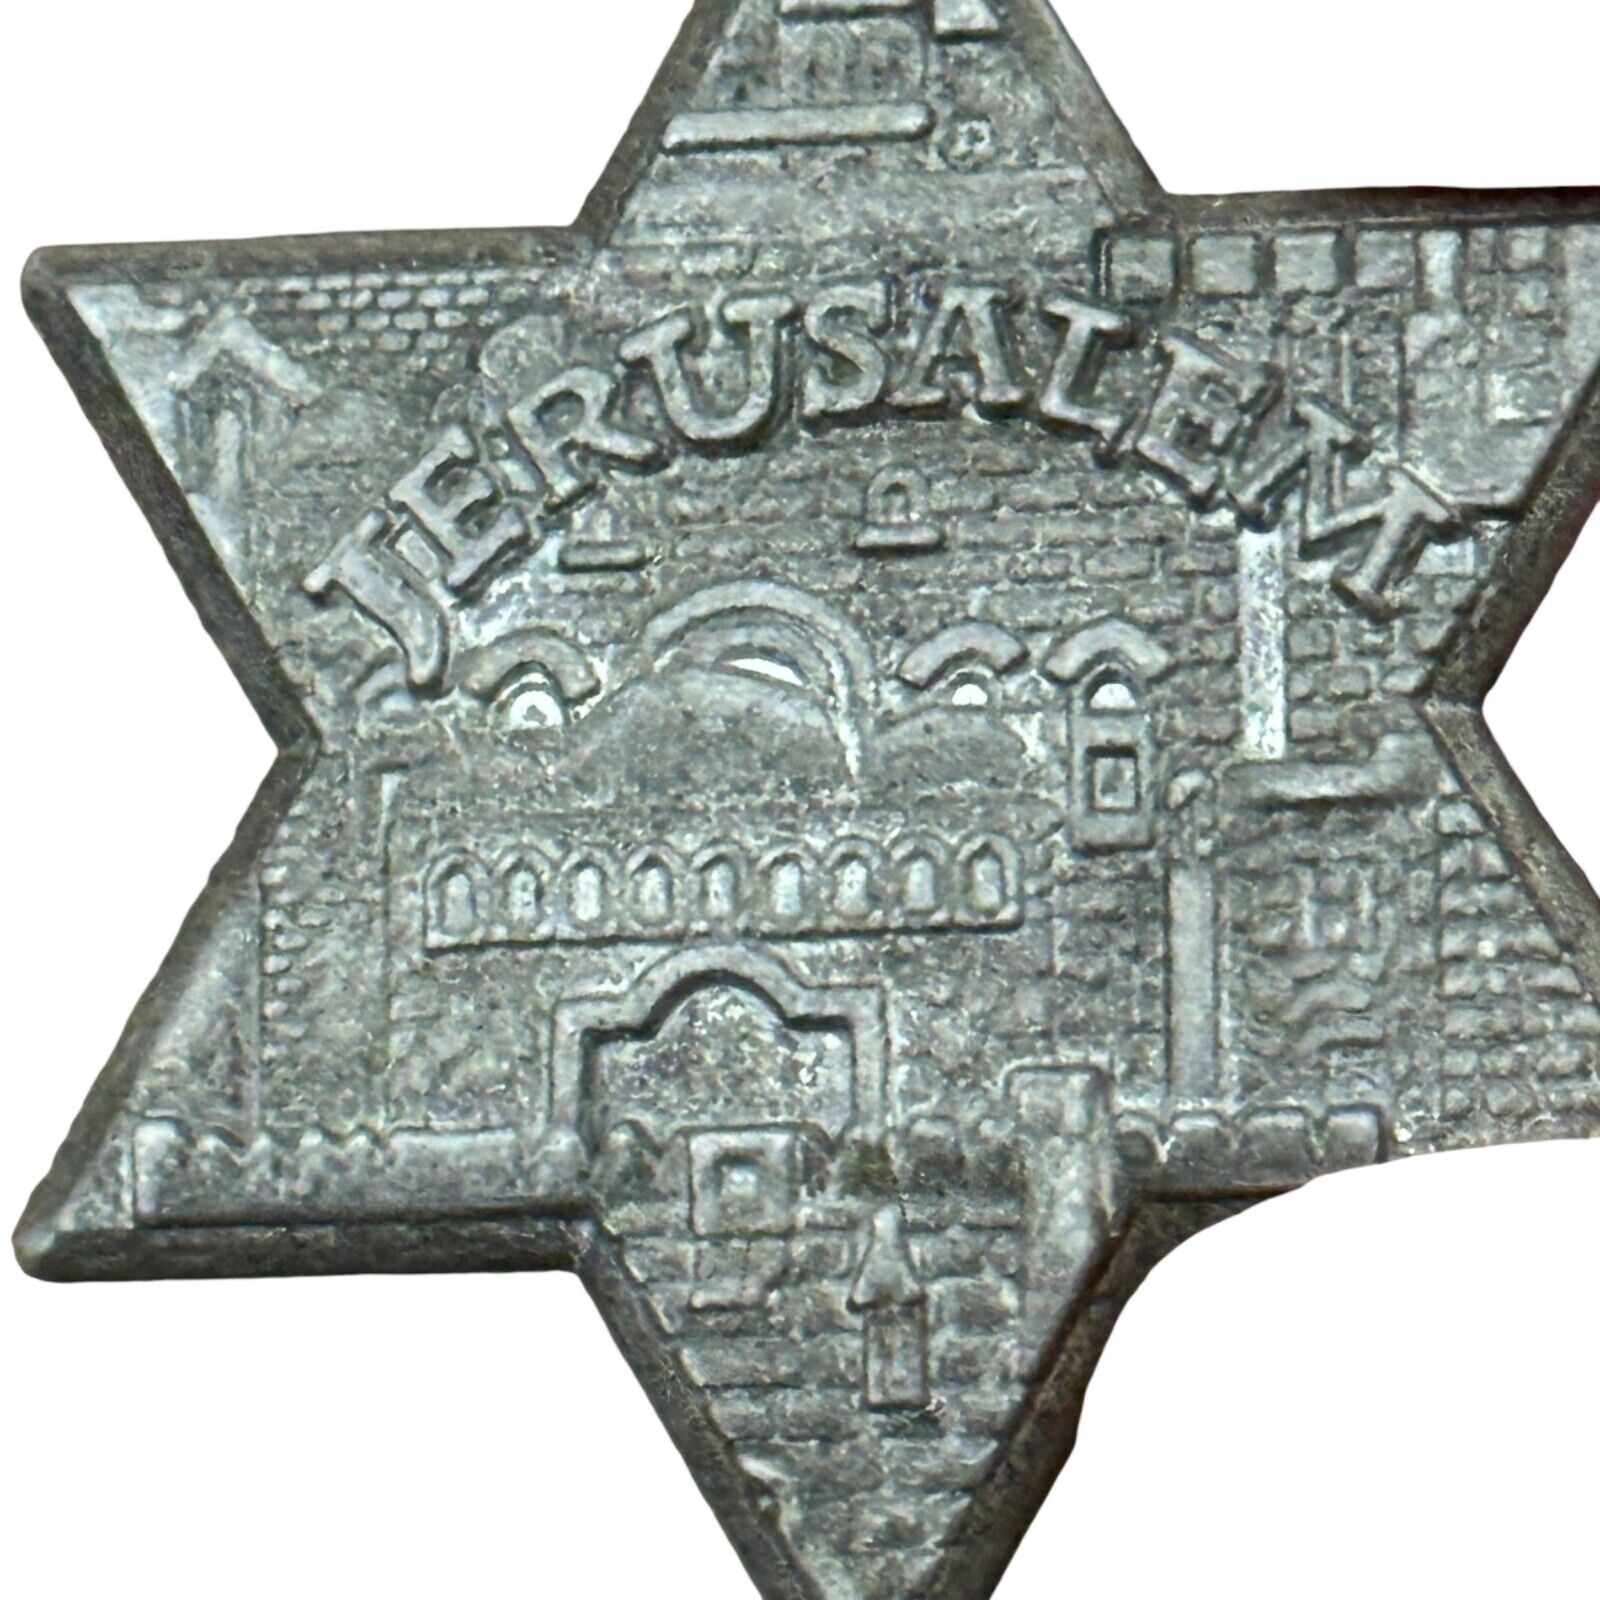 Vintage Jerusalem Star of David Souvenir Keychain Israel Jewish Hebrew Wall